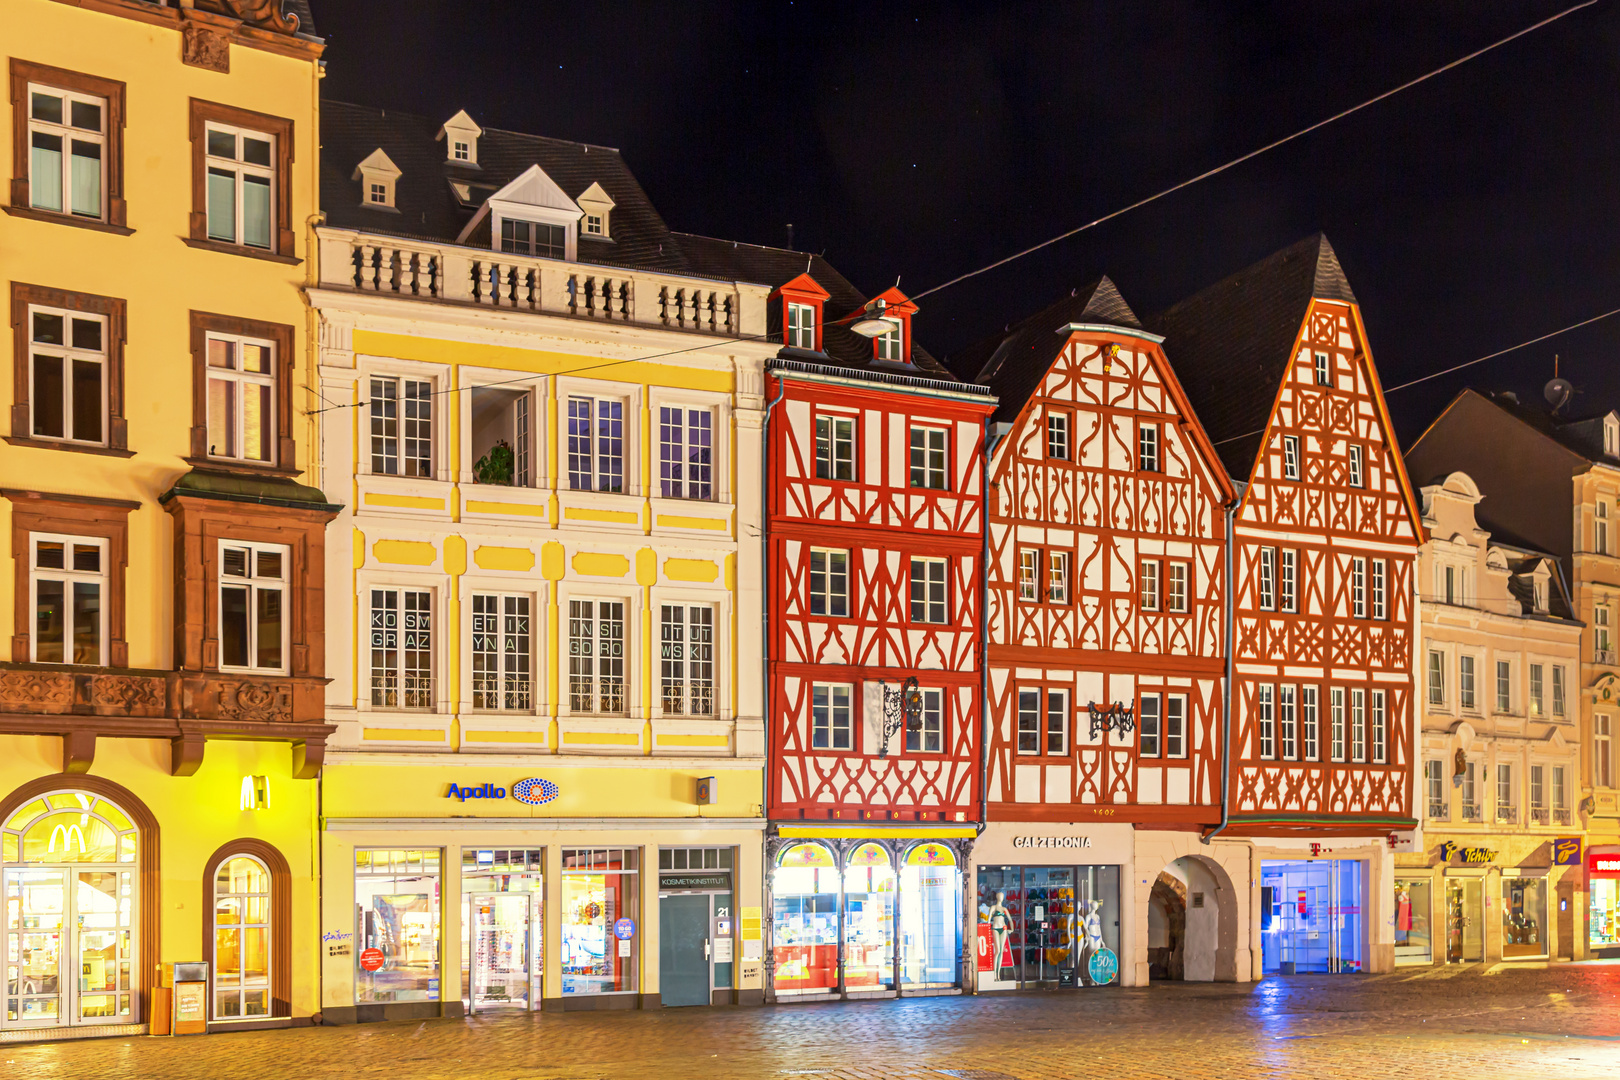 Altstadt Trier